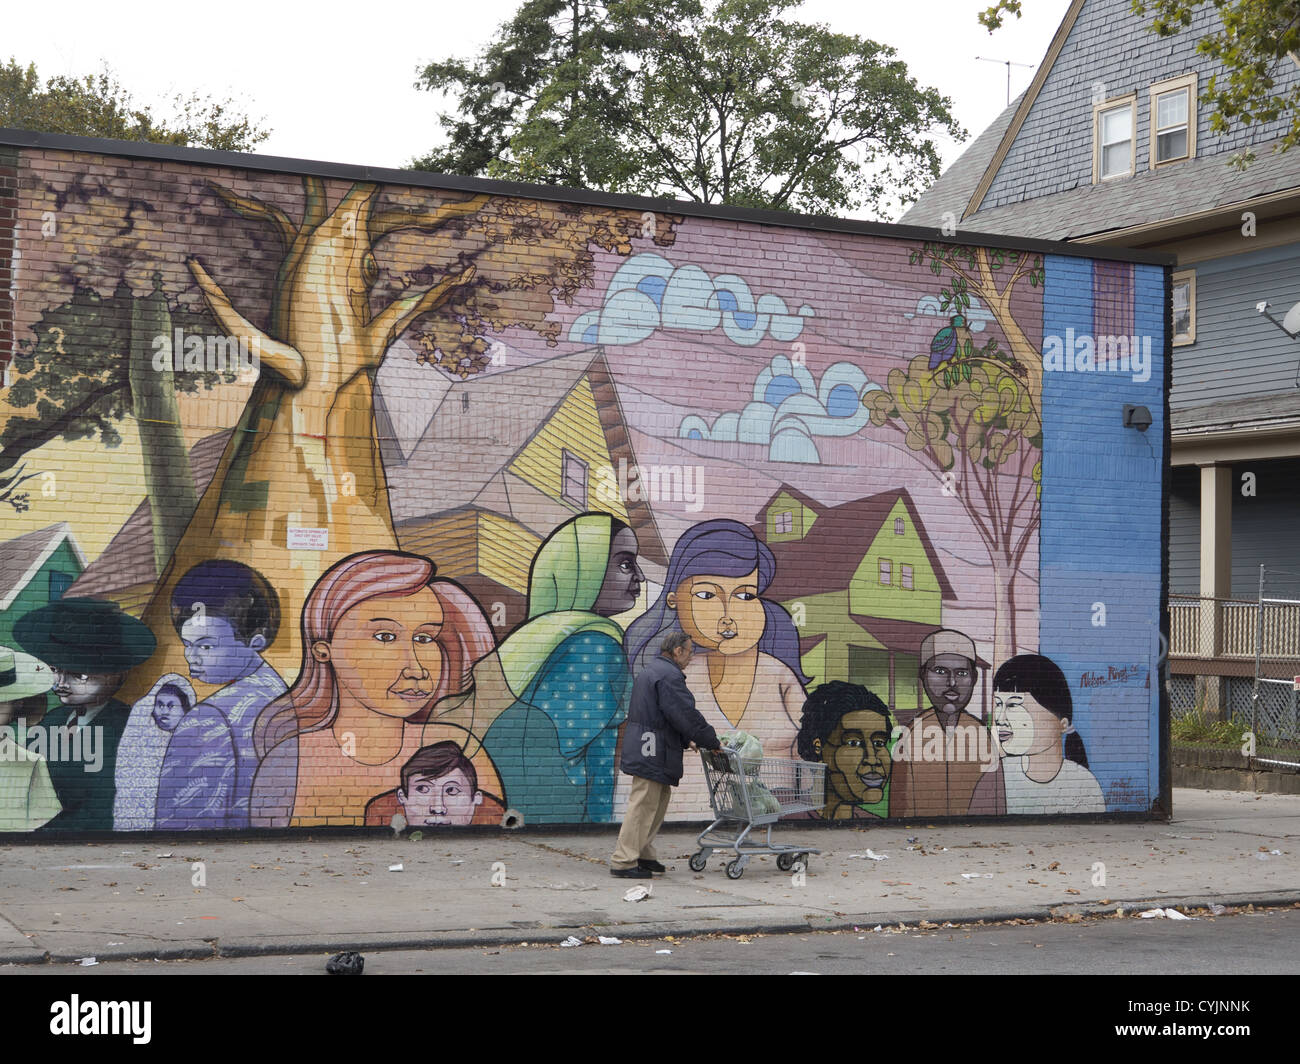 Multikulturelle Wandbild auf der reflektierenden Flatbush Food Co-op die großartige Mischung aus Kulturen & Volksgruppen in Brooklyn, New York. Stockfoto